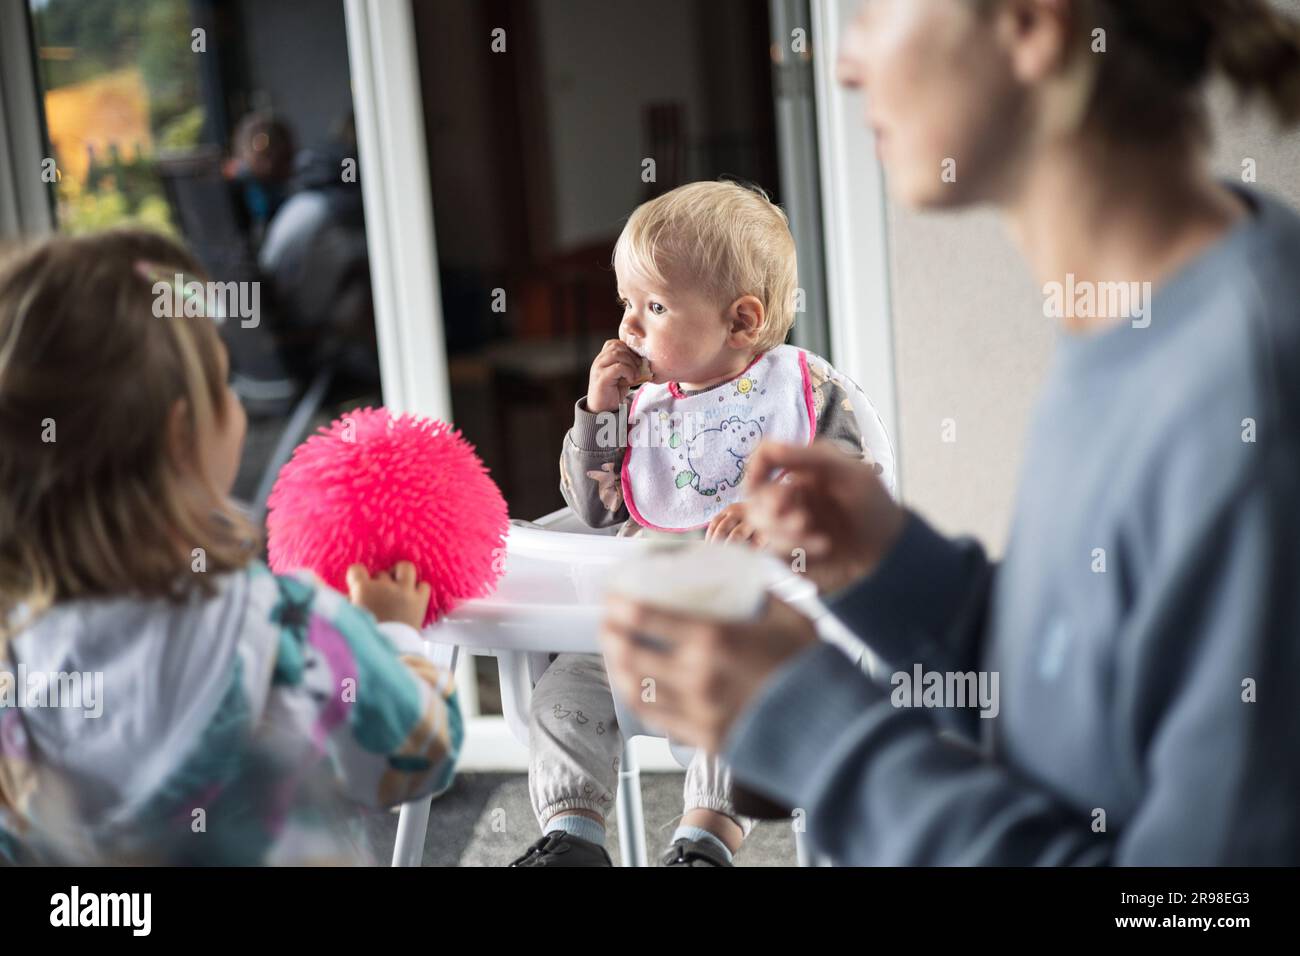 Cucchiaio per la madre che dà da mangiare al bambino in seggiolone con purea di frutta al tavolo da pranzo a casa. Concetto introduttivo di alimenti solidi per bambini. Foto Stock